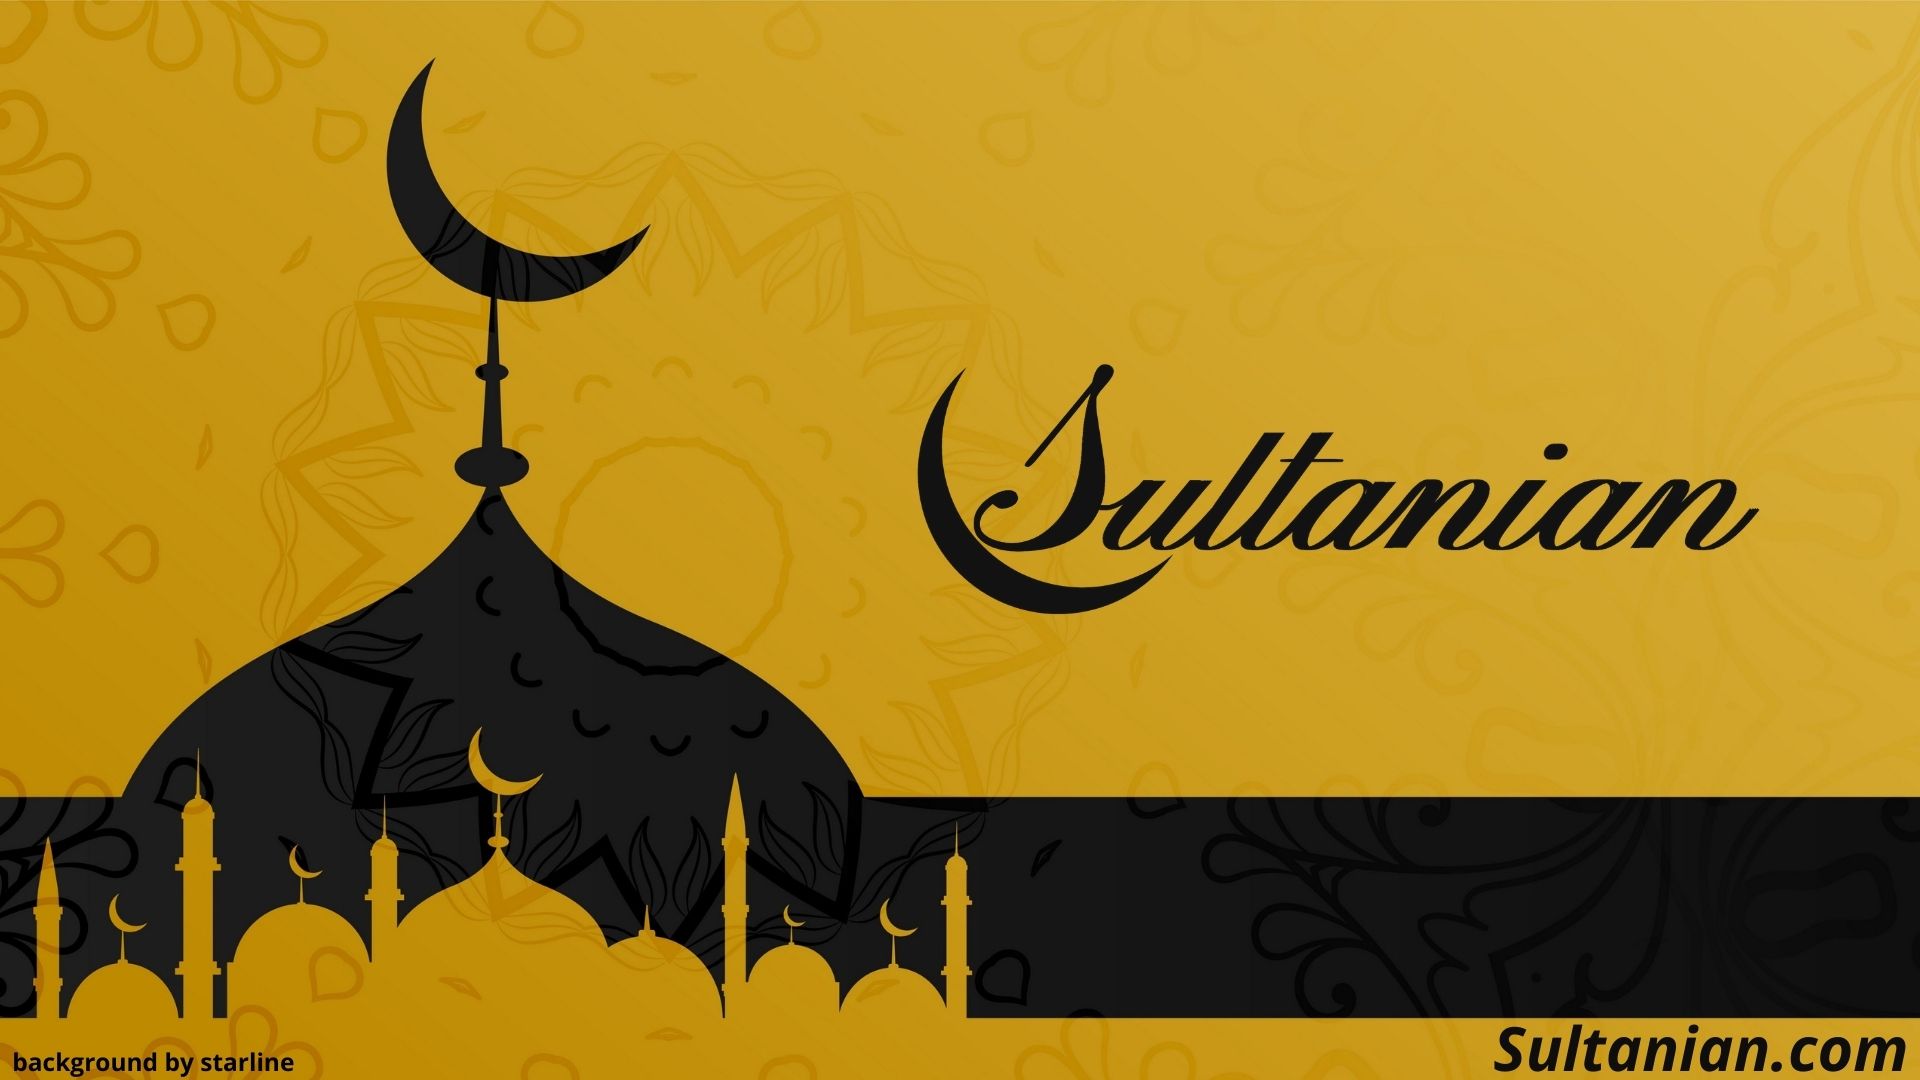 Sultanian.jpg